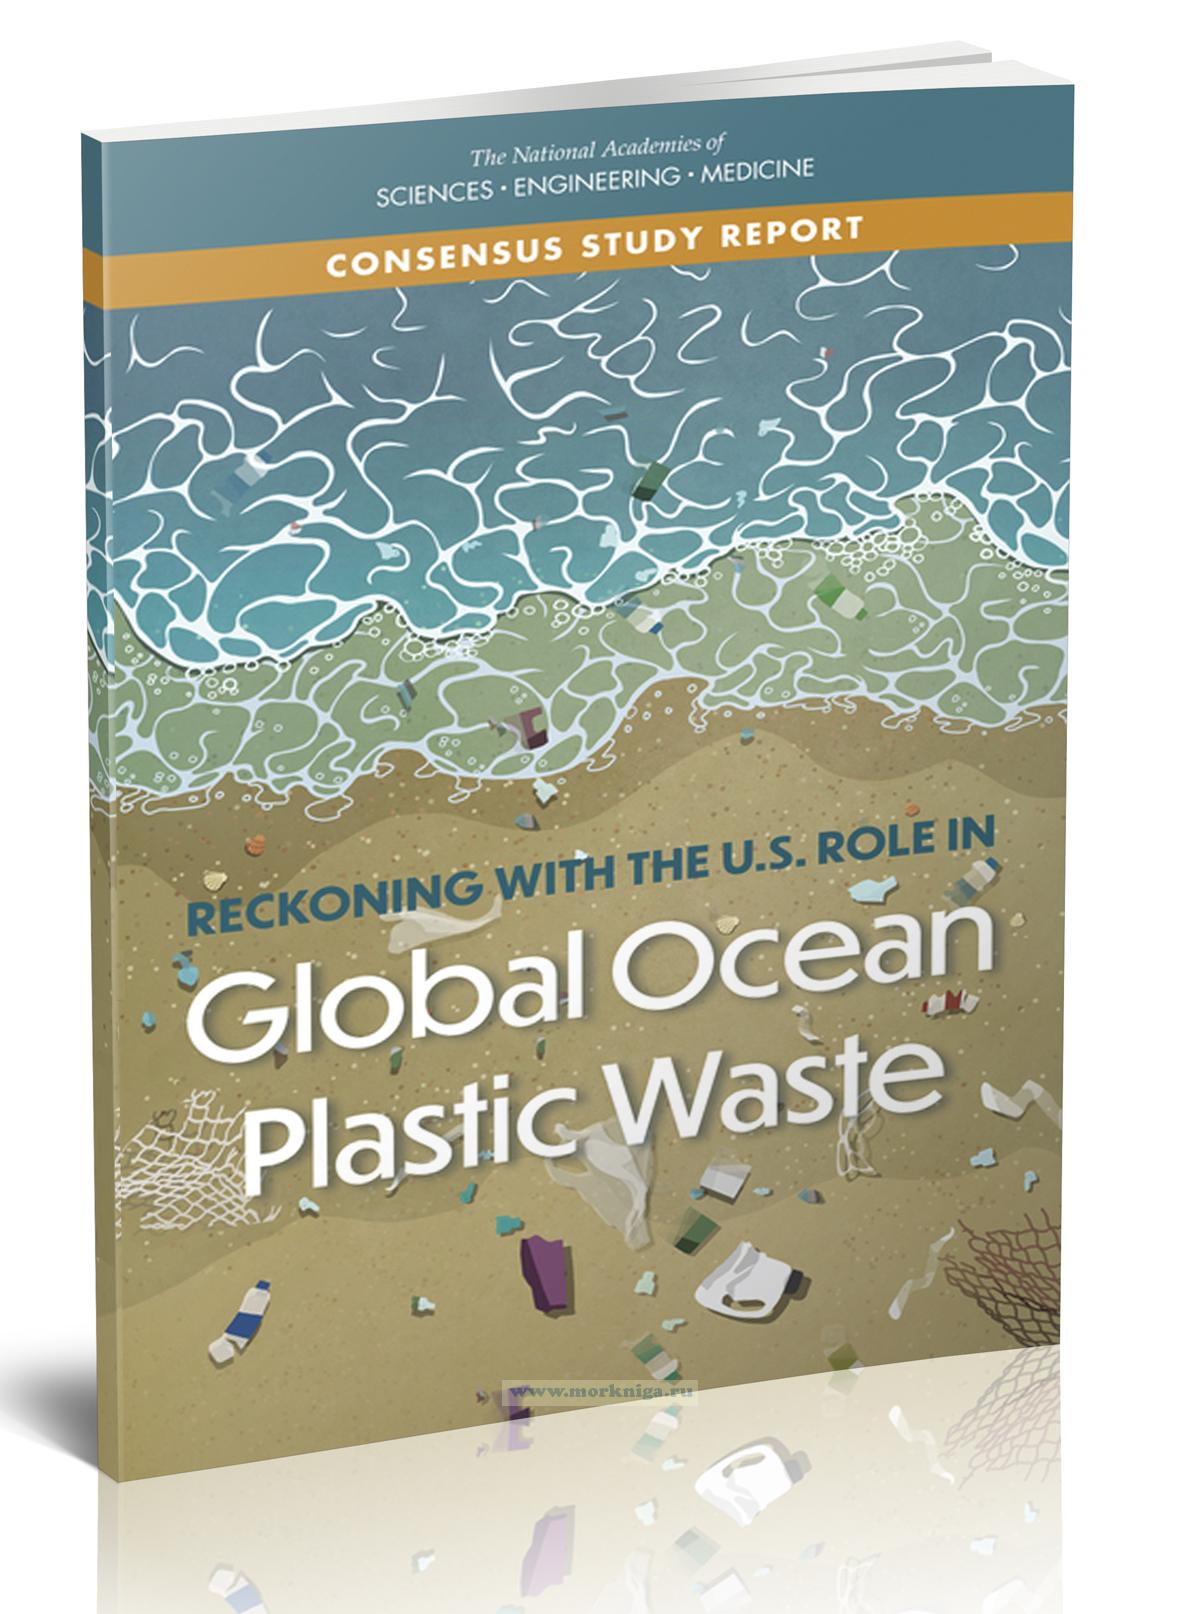 Reckoning with the U.S. role in Global Ocean Plastic Waste/Признавая роль США в загрязнении Мирового Океана пластиковыми отходами